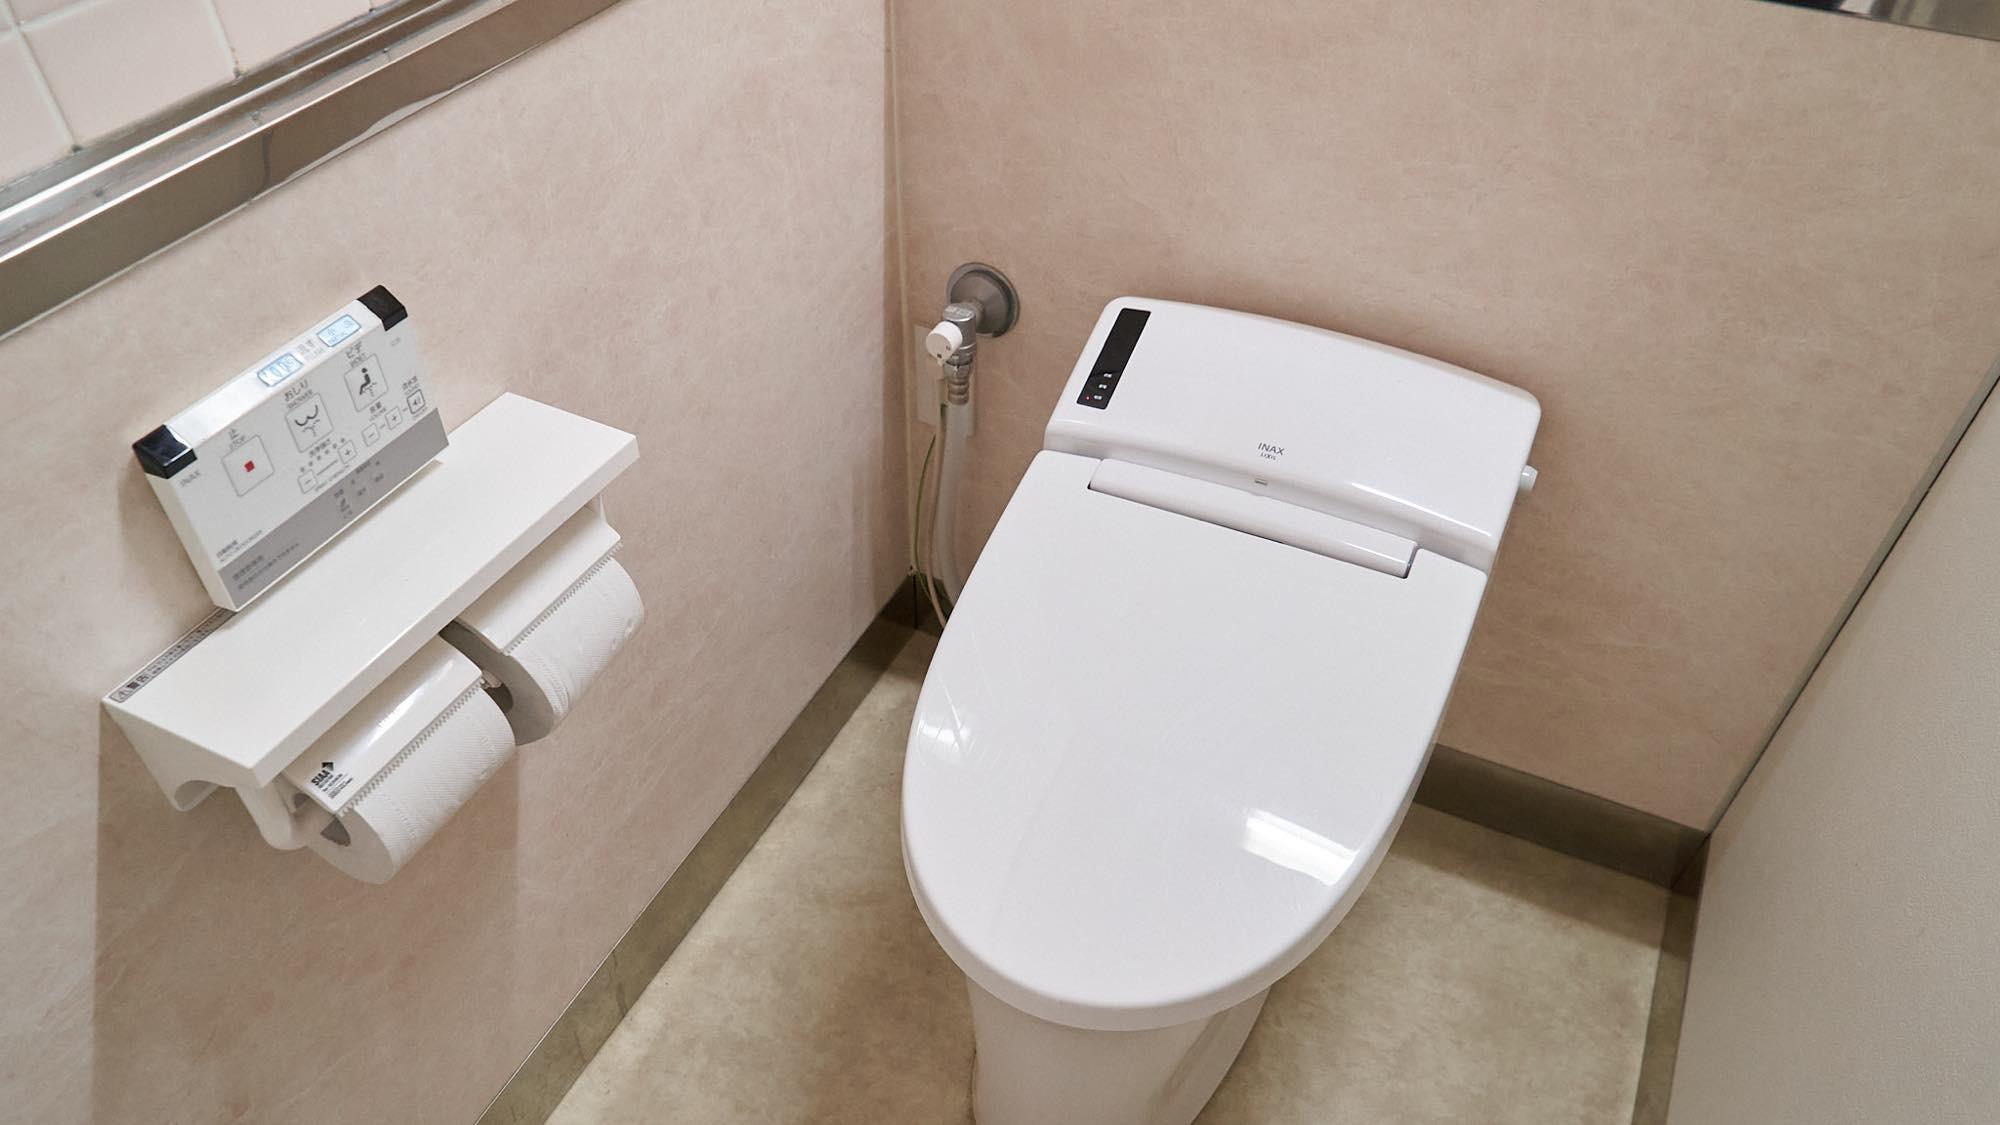 シャワー・お手洗いは別棟にご用意しております。客室から約100メートル